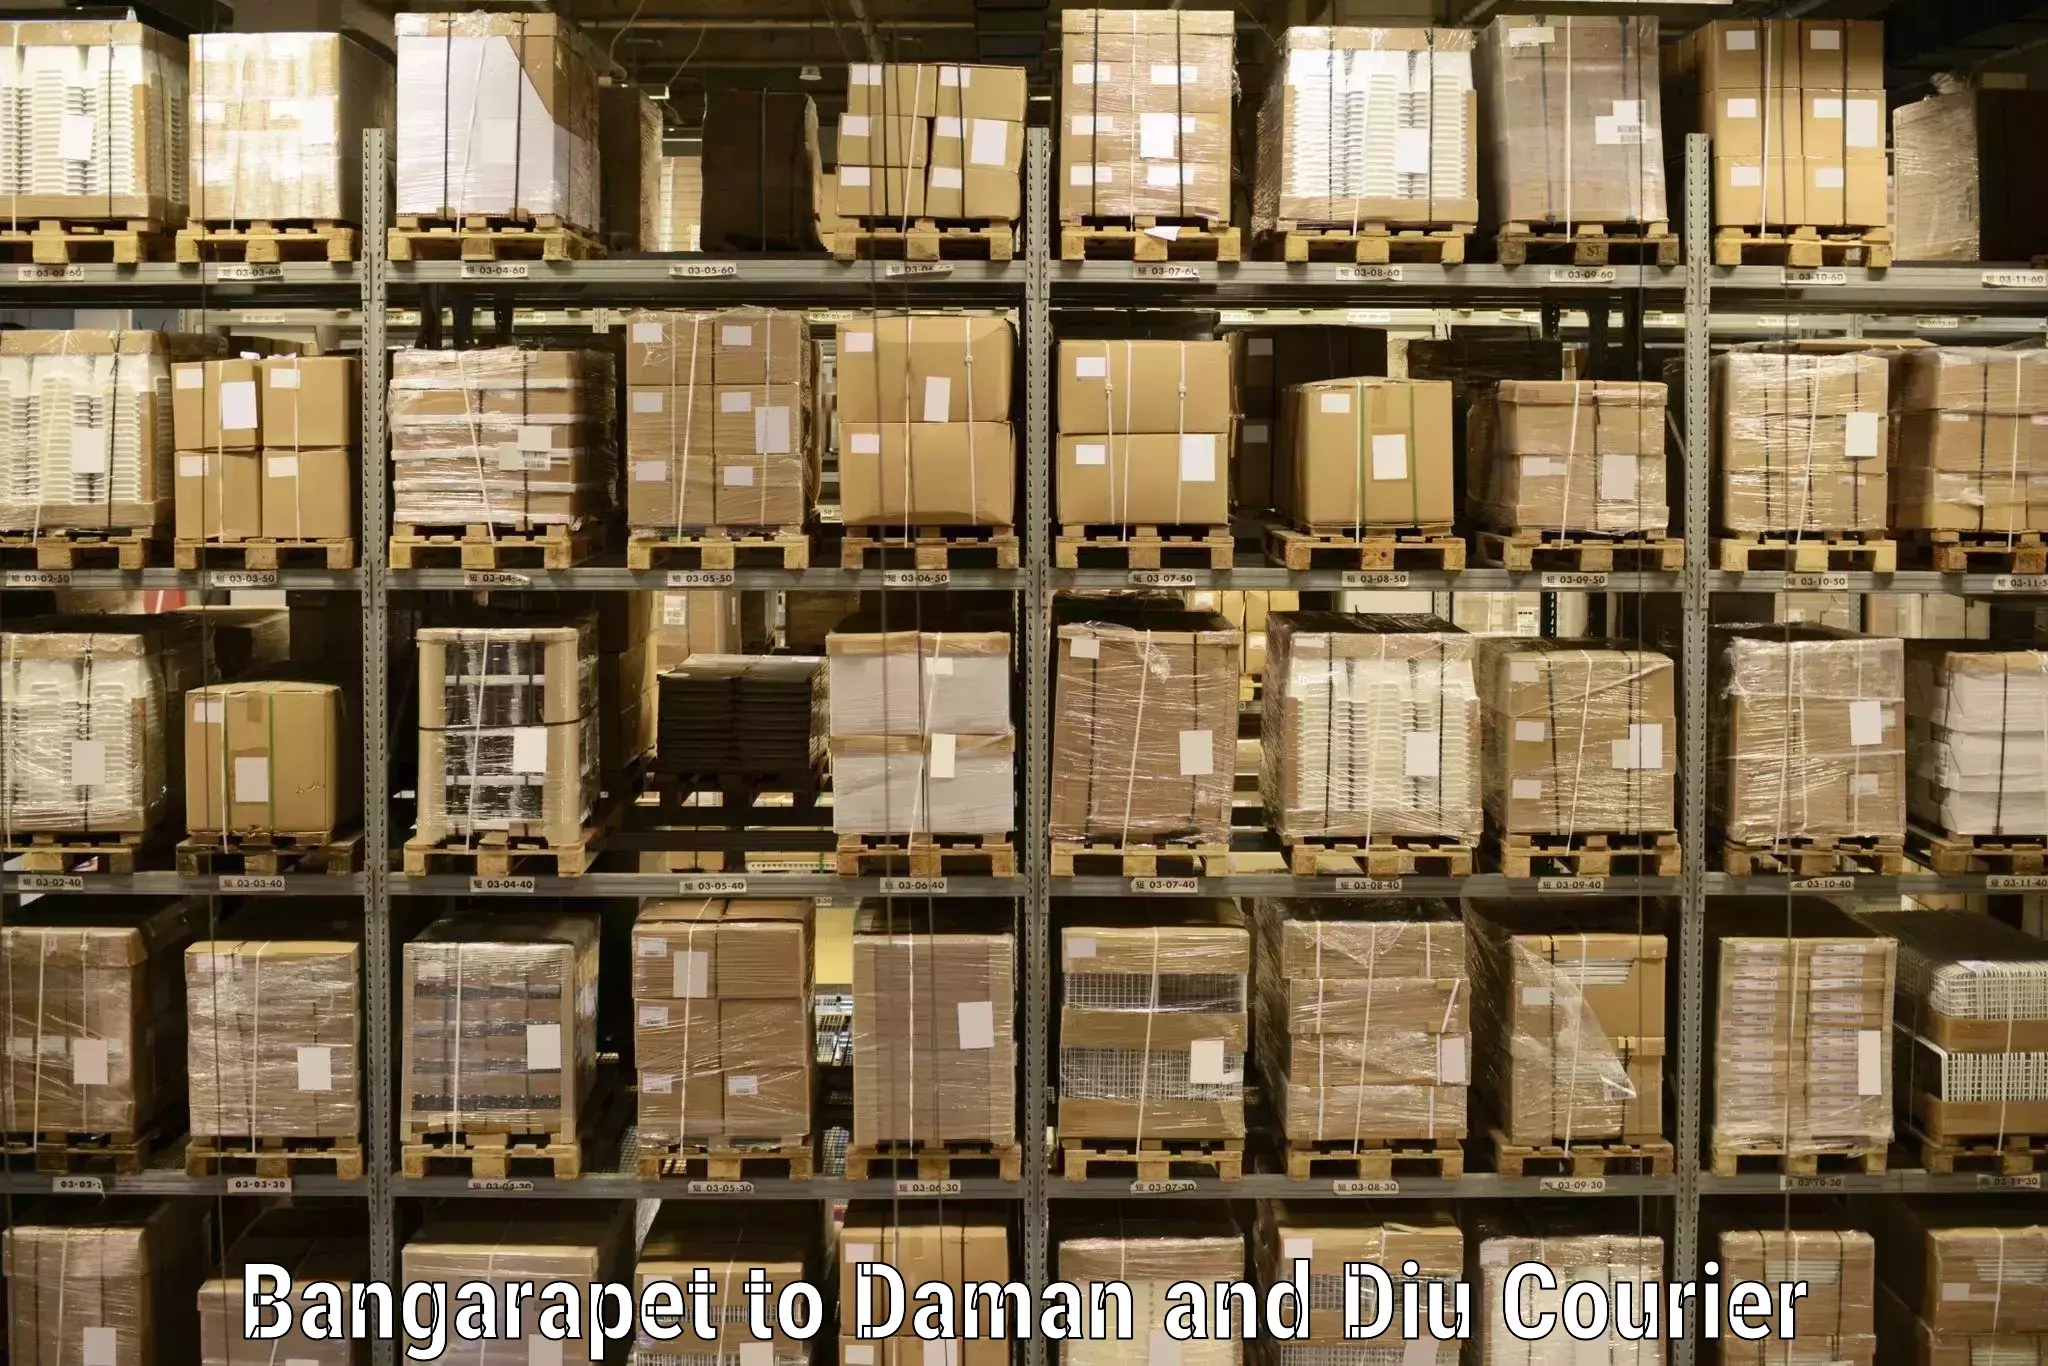 Global shipping networks Bangarapet to Daman